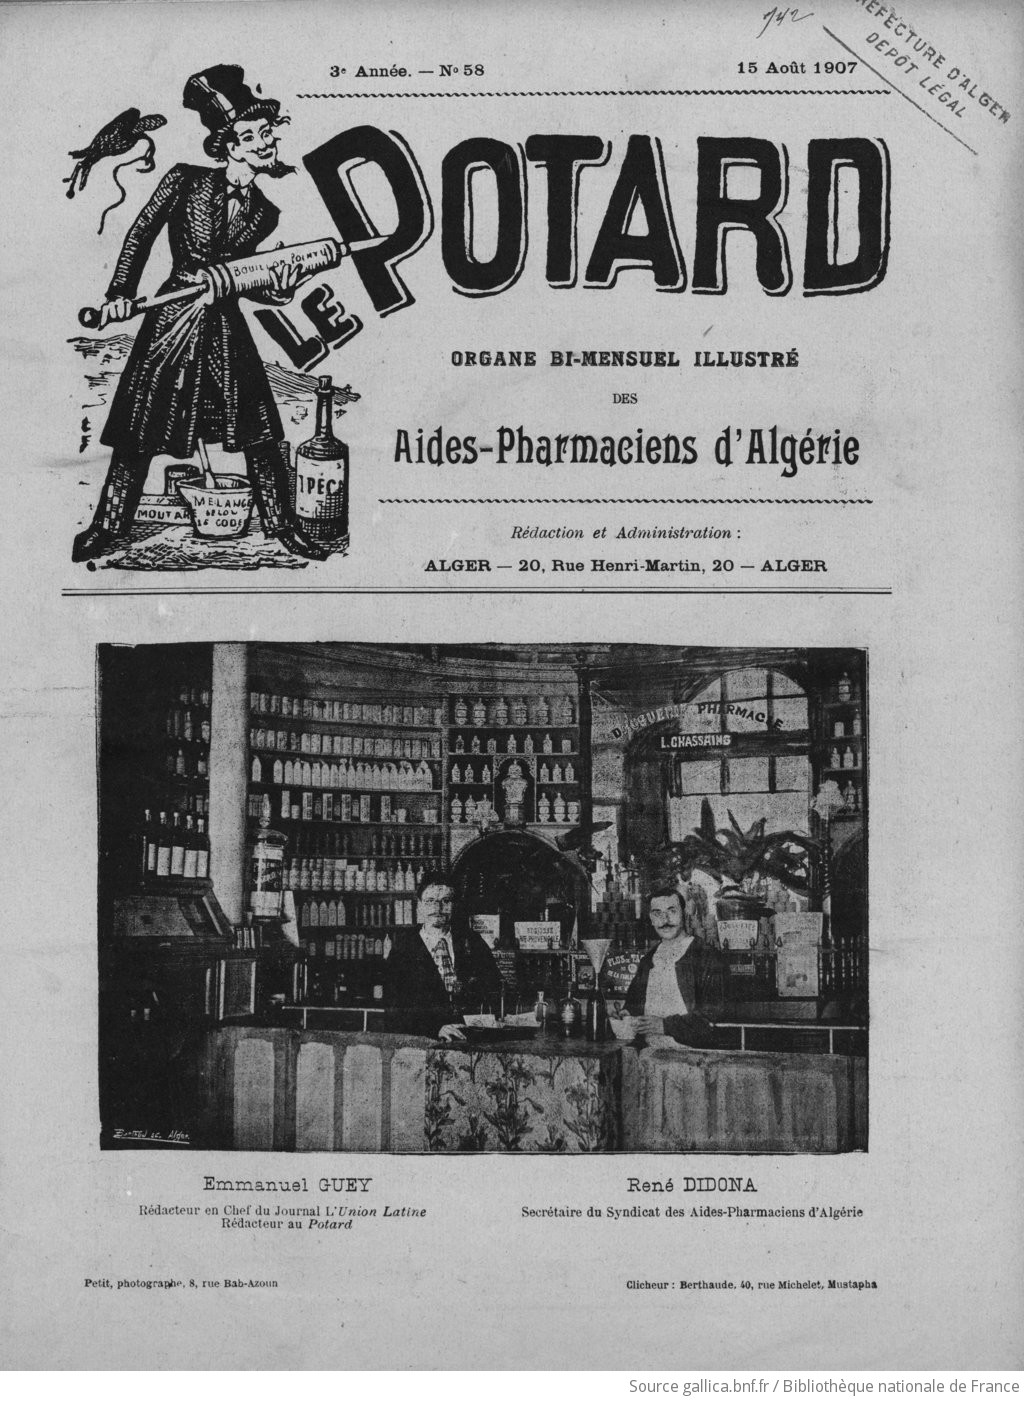 Le Potard : organe indépendant des aides-pharmaciens | 1907-08-15 | Gallica